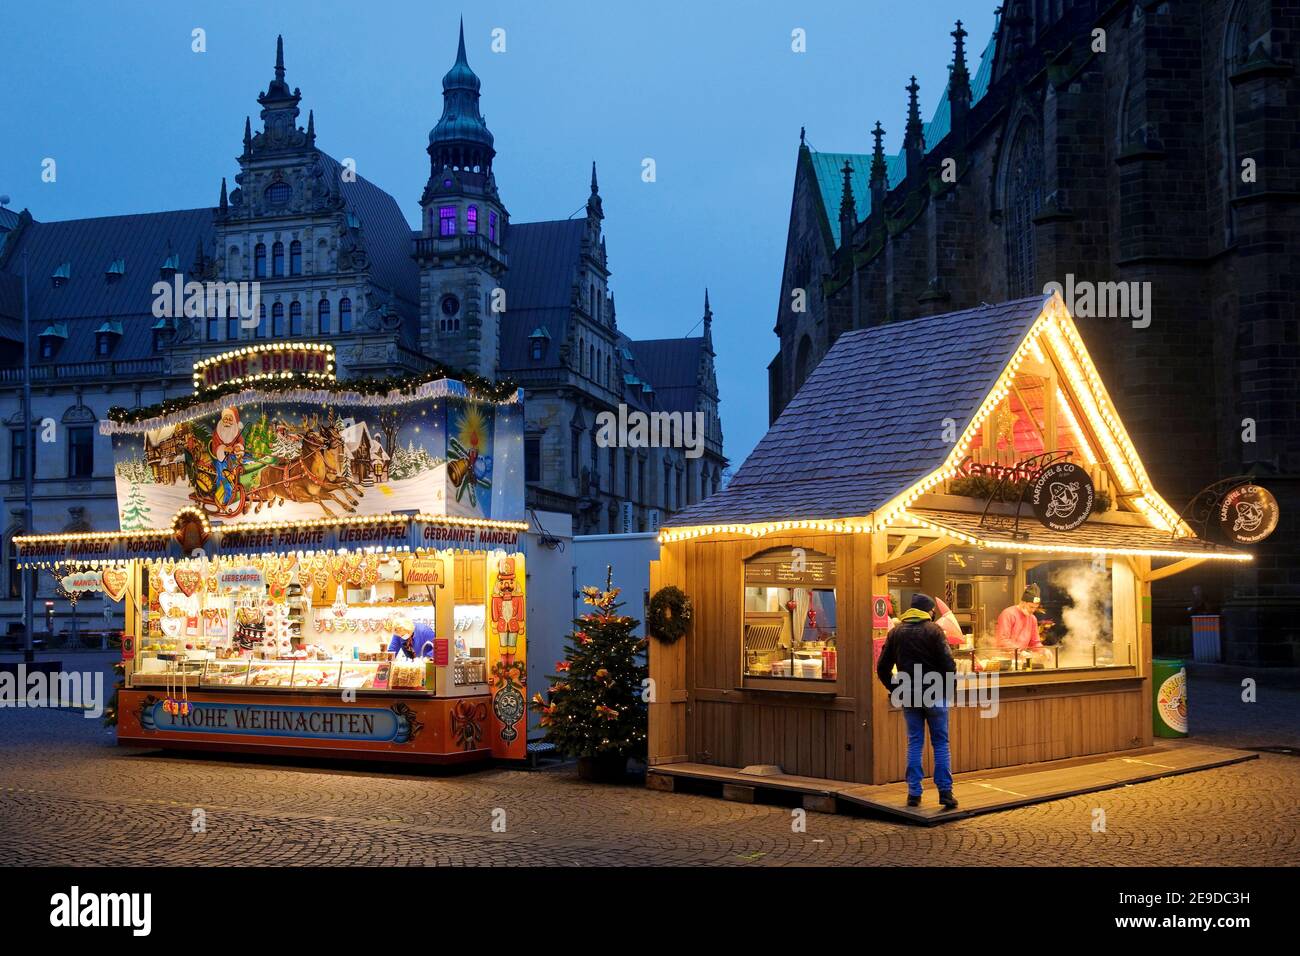 Kleiner Weihnachtsmarkt 2020 auf dem Domshof in der Bremer Altstadt, wenige Besucher während der Coronapandemie, Deutschland, Bremen Stockfoto